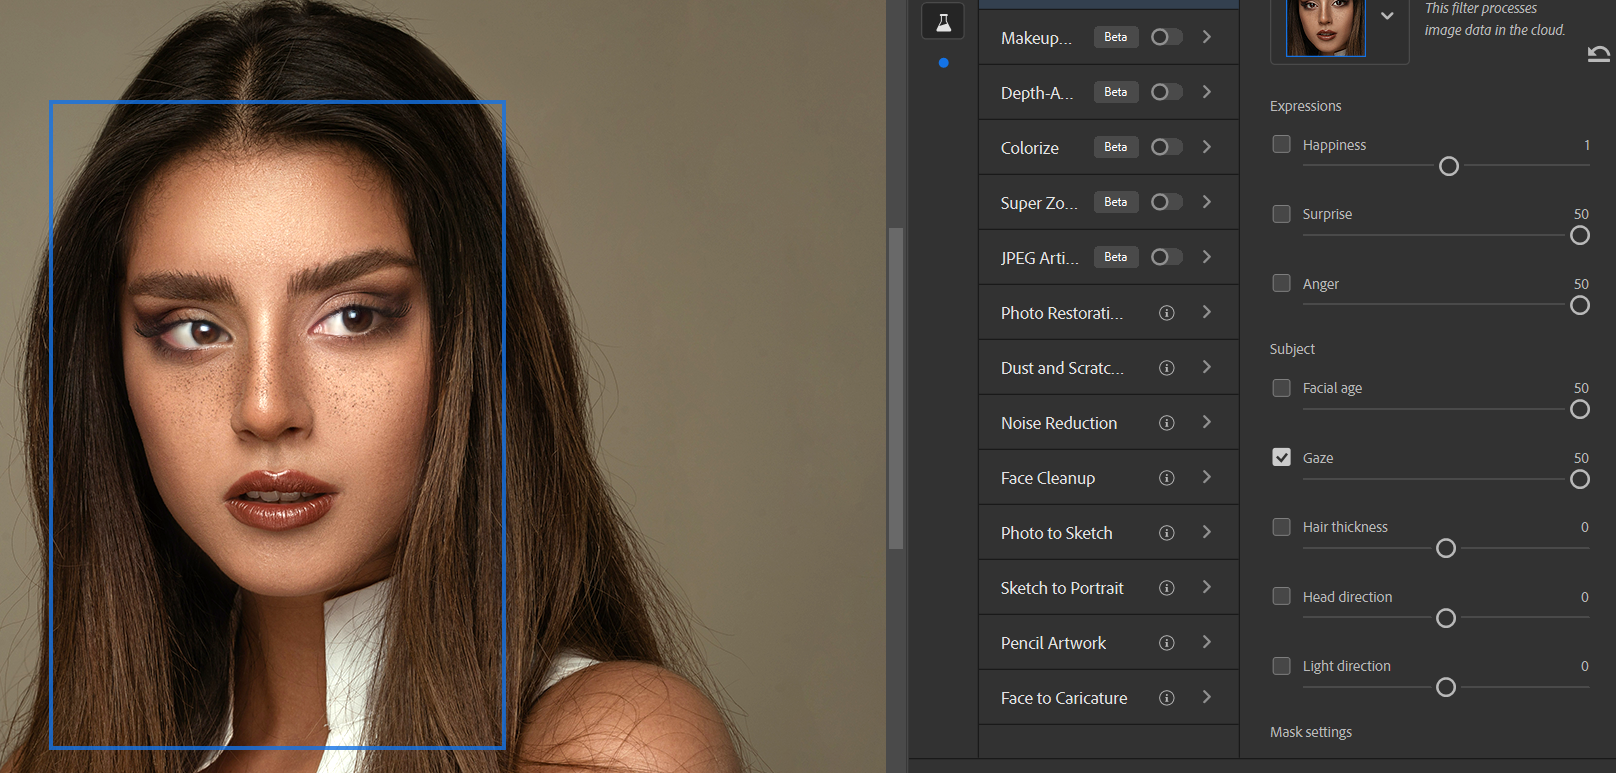 20 Gaze 50 - Come utilizzare la funzione Ritratto intelligente di Photoshop: una guida per principianti